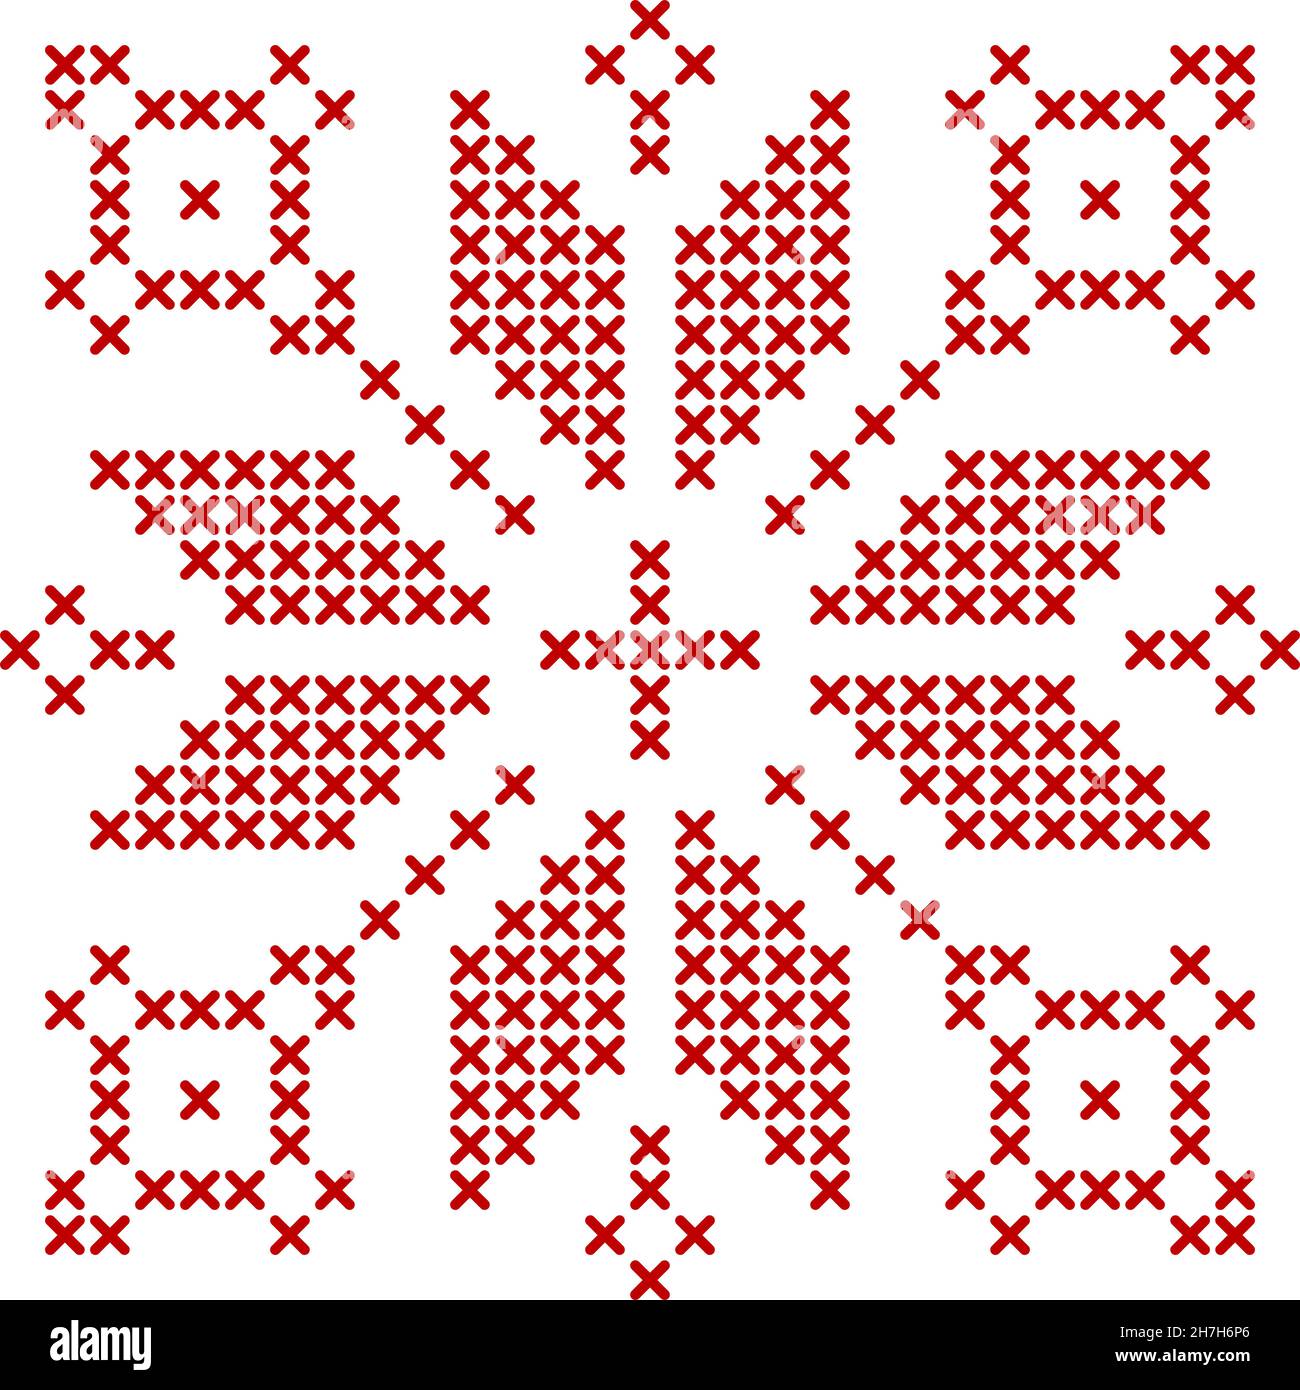 Motif à tricot scandinave.Décoration géométrique rouge pour motif étoiles  en forme de flocon de neige brodé.Parfait pour le motif point de croix de  Noël.Illustrateur de vecteur Image Vectorielle Stock - Alamy